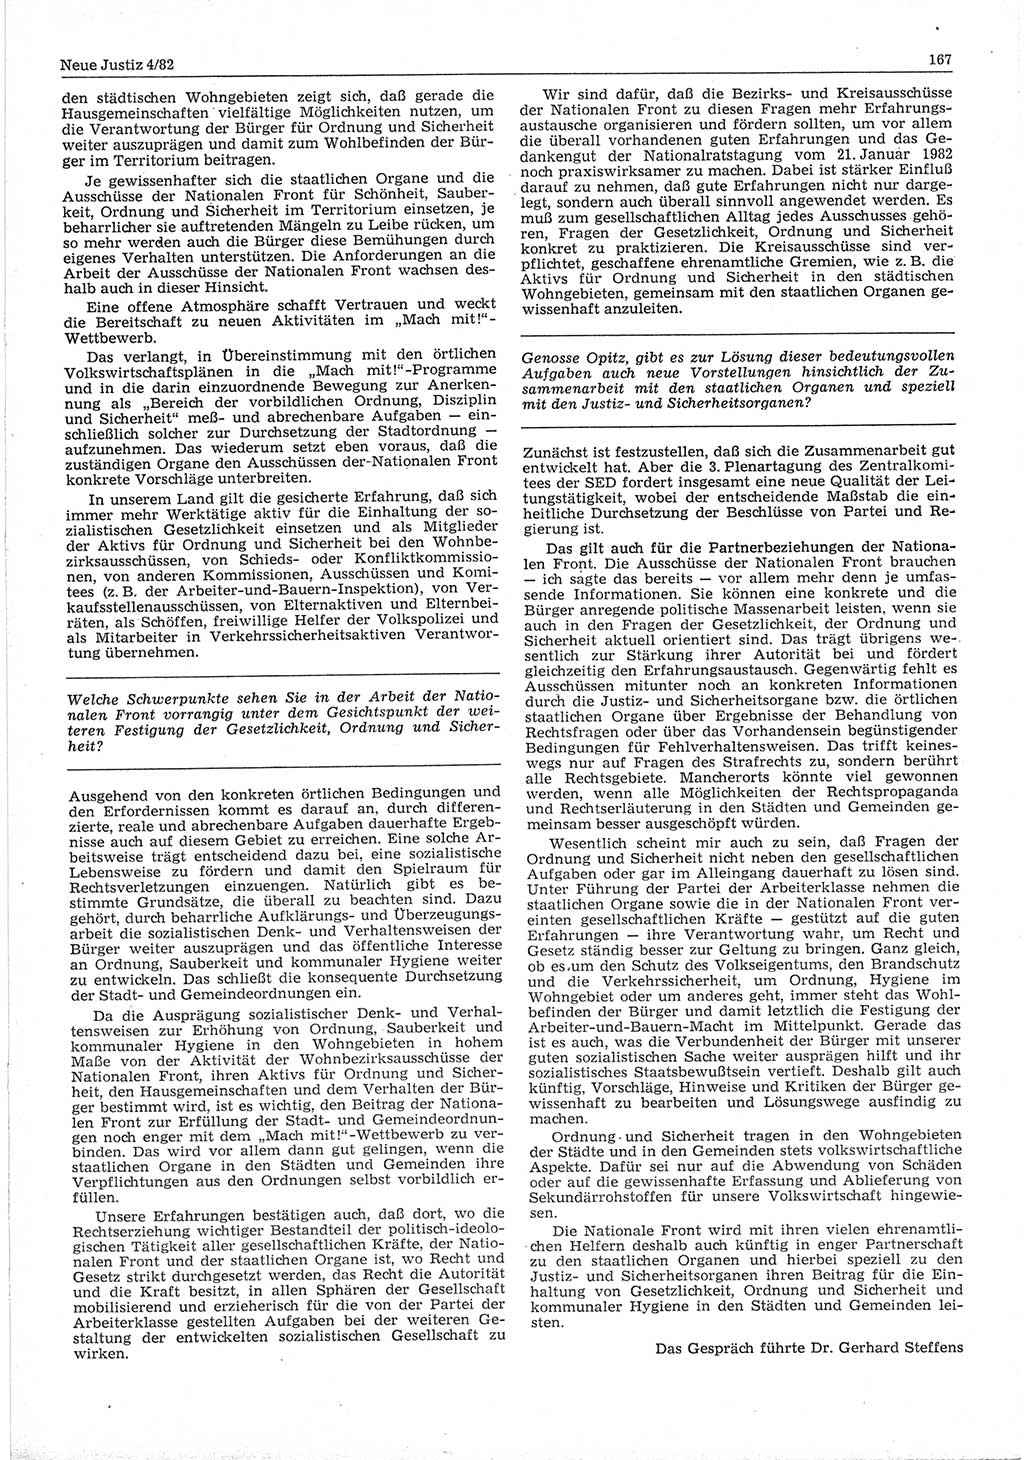 Neue Justiz (NJ), Zeitschrift für sozialistisches Recht und Gesetzlichkeit [Deutsche Demokratische Republik (DDR)], 36. Jahrgang 1982, Seite 167 (NJ DDR 1982, S. 167)